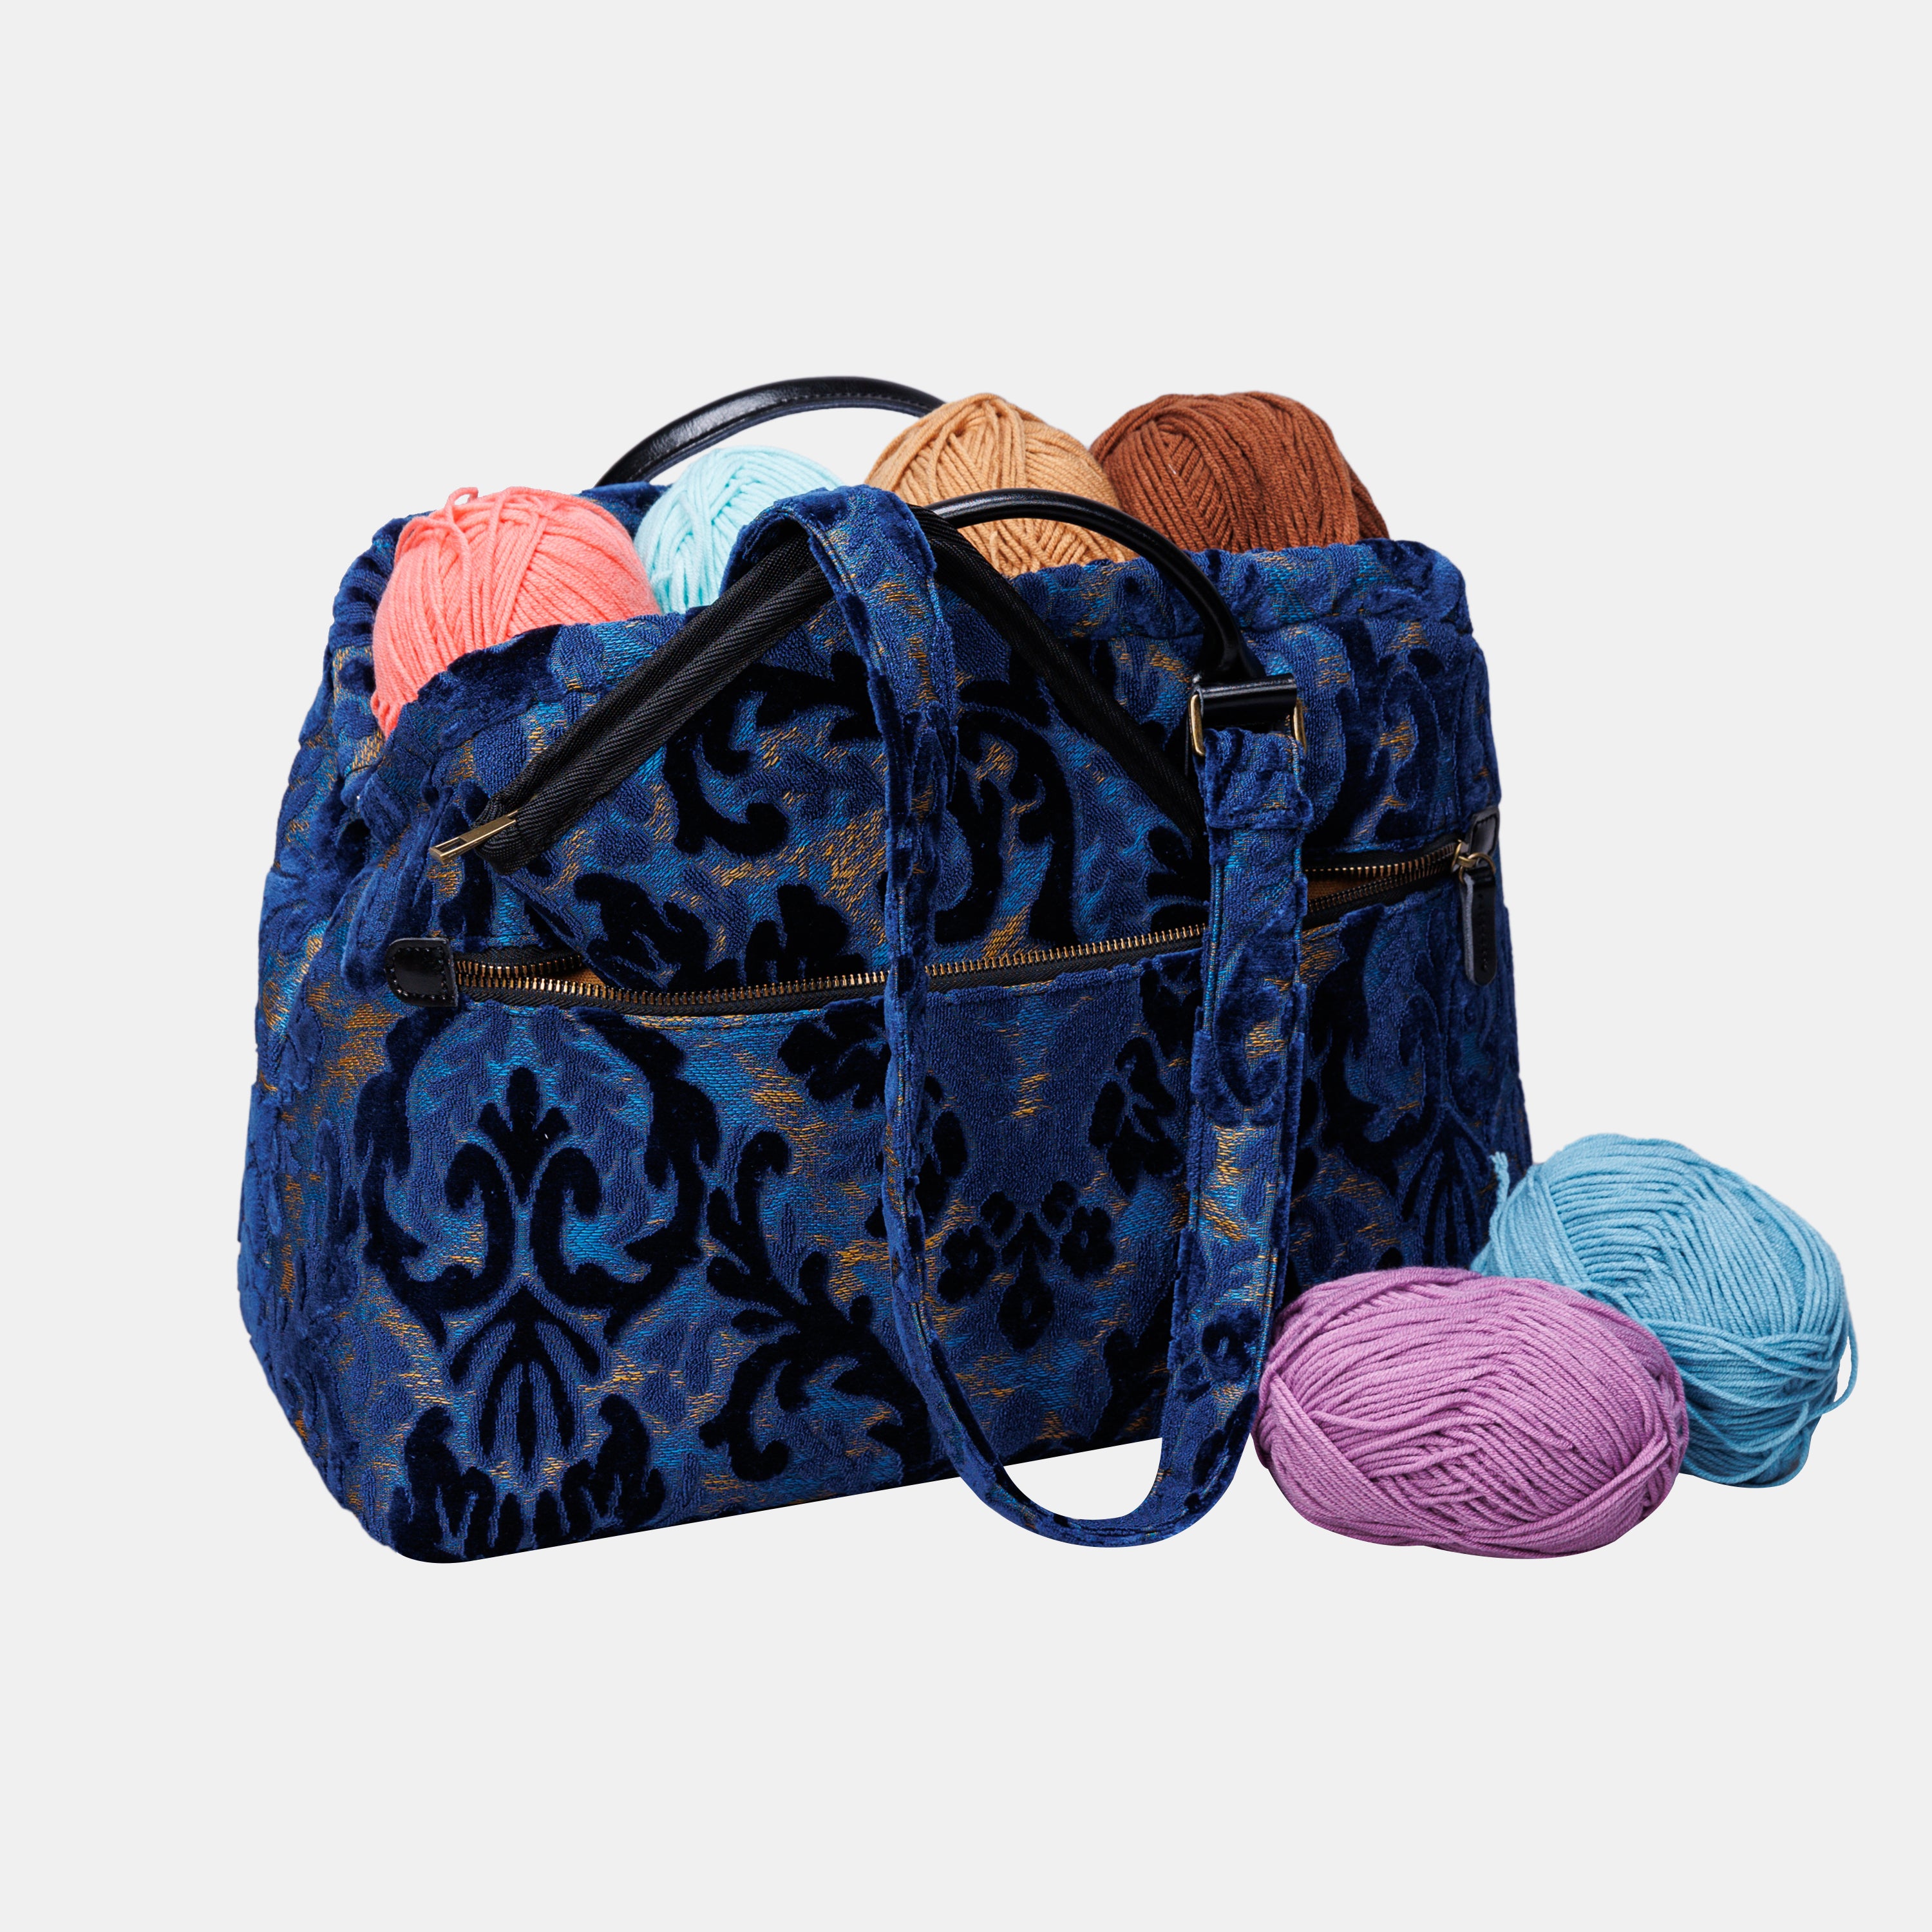 Burnout Velvet Navy Knitting Project Bag  MCW Handmade-6